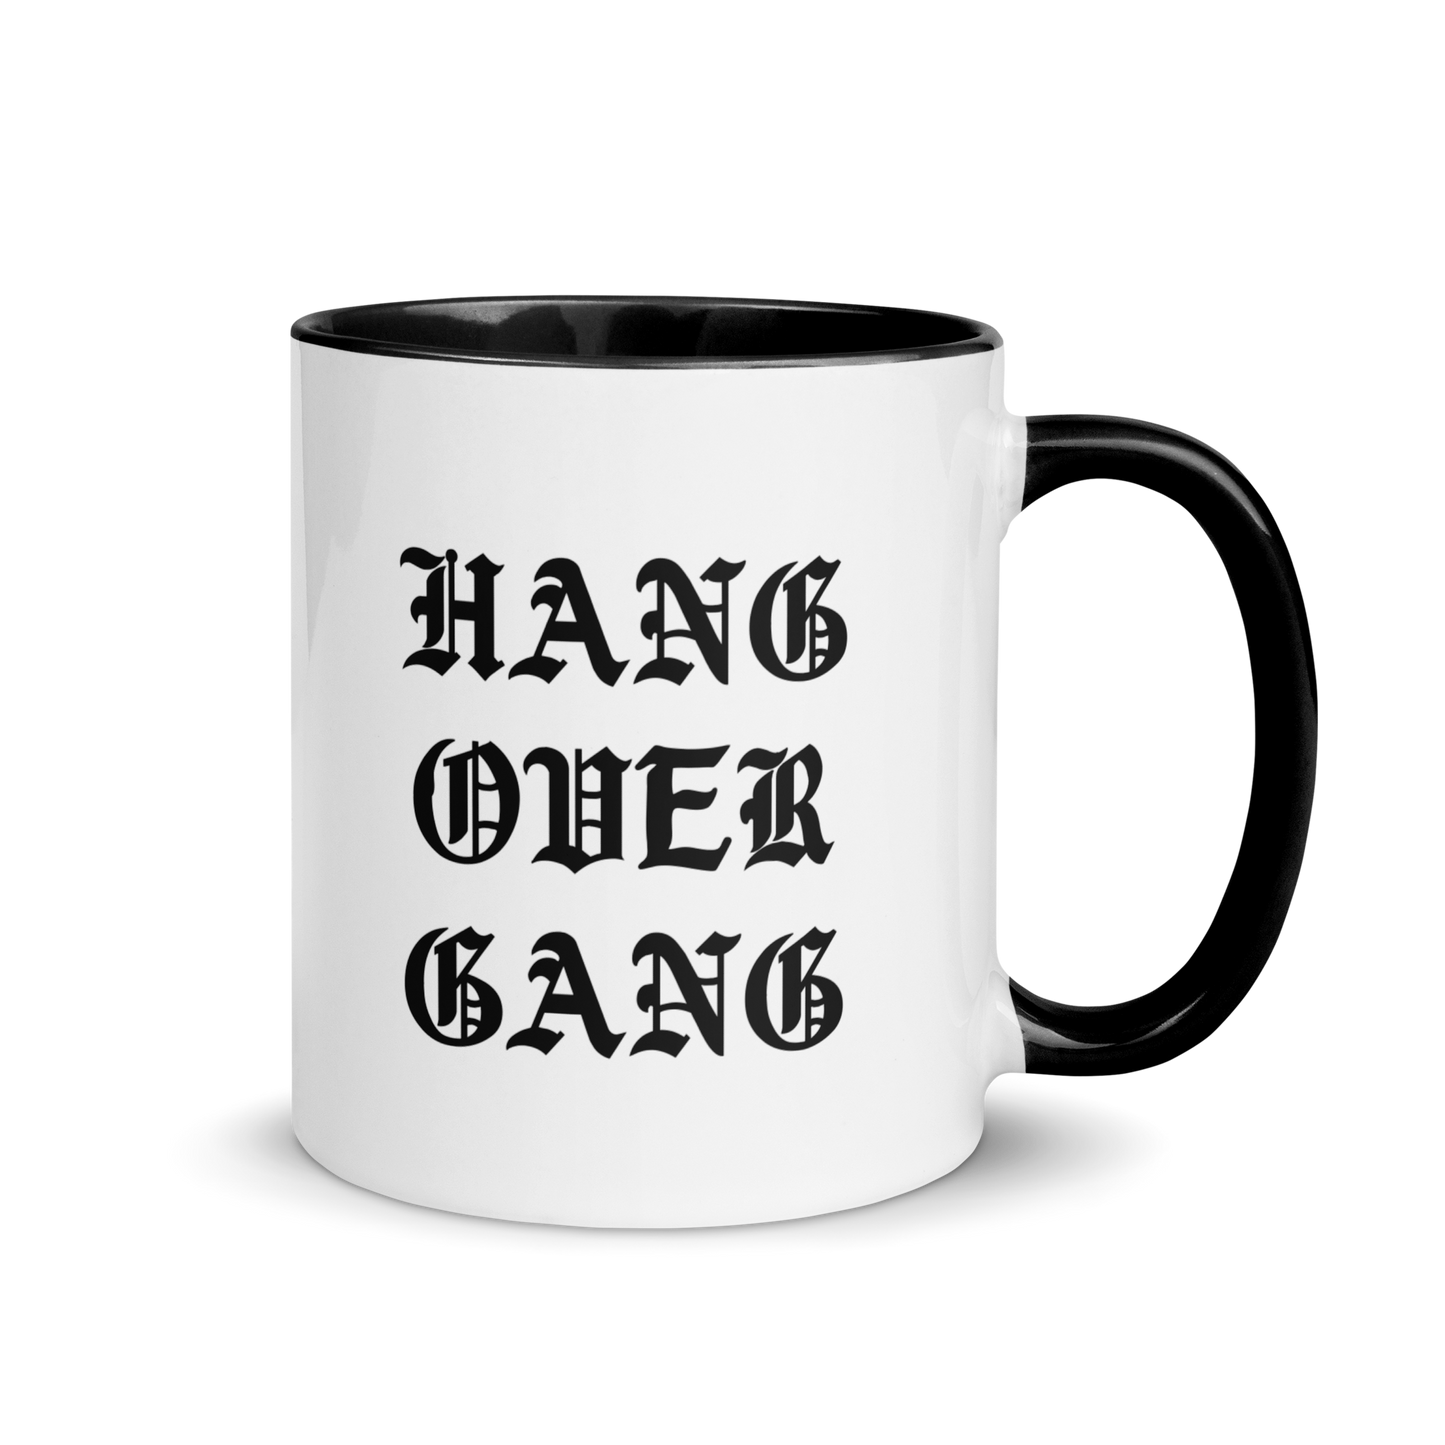 "Tears Of Our Haters" HOG Mug